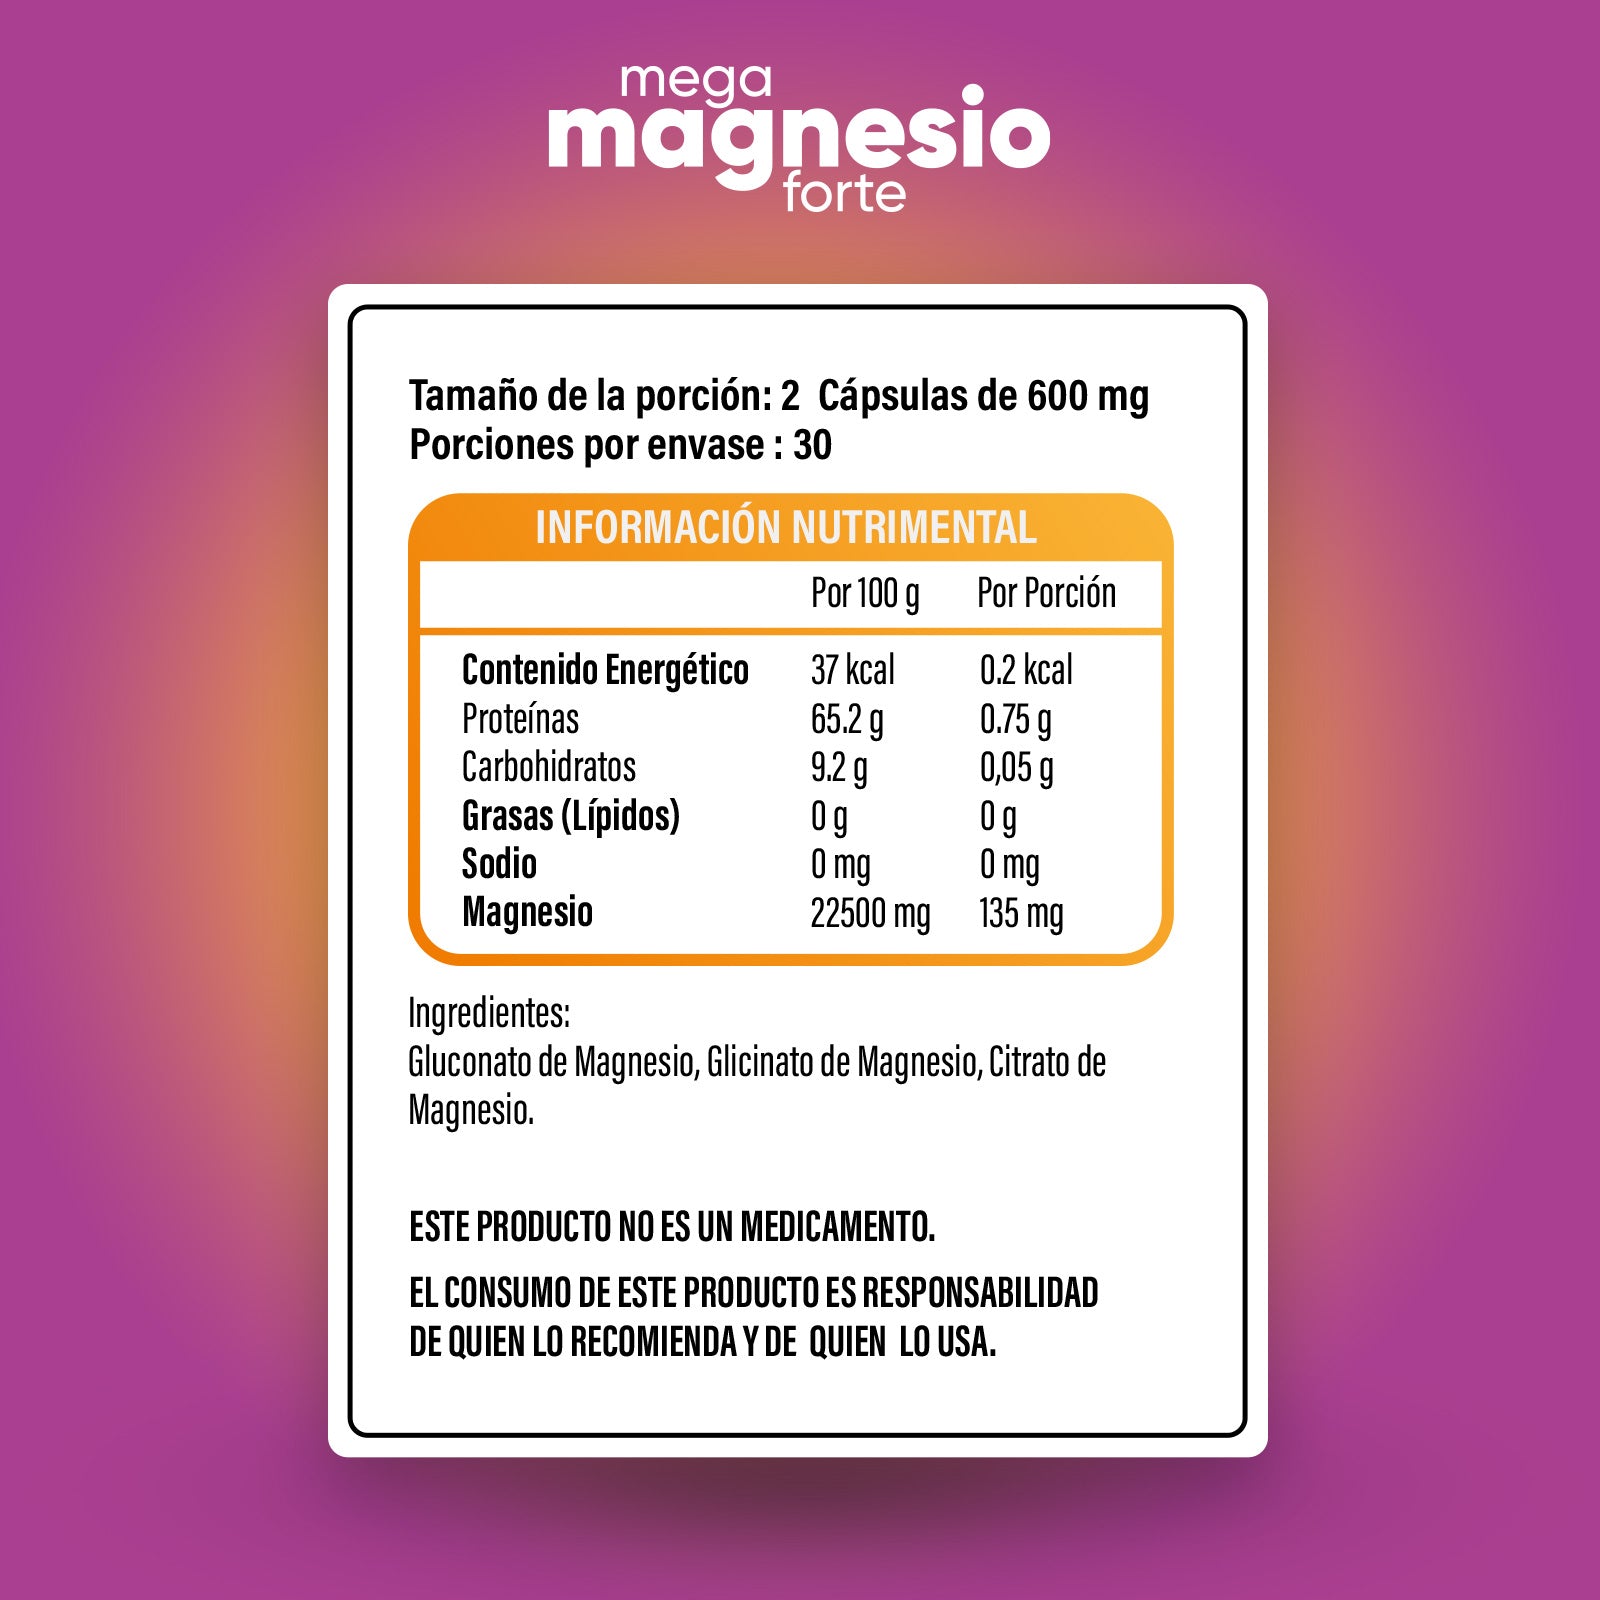 Gluconato de Magnesio, Glicinato de Magnesio, Citrato de Magnesio.